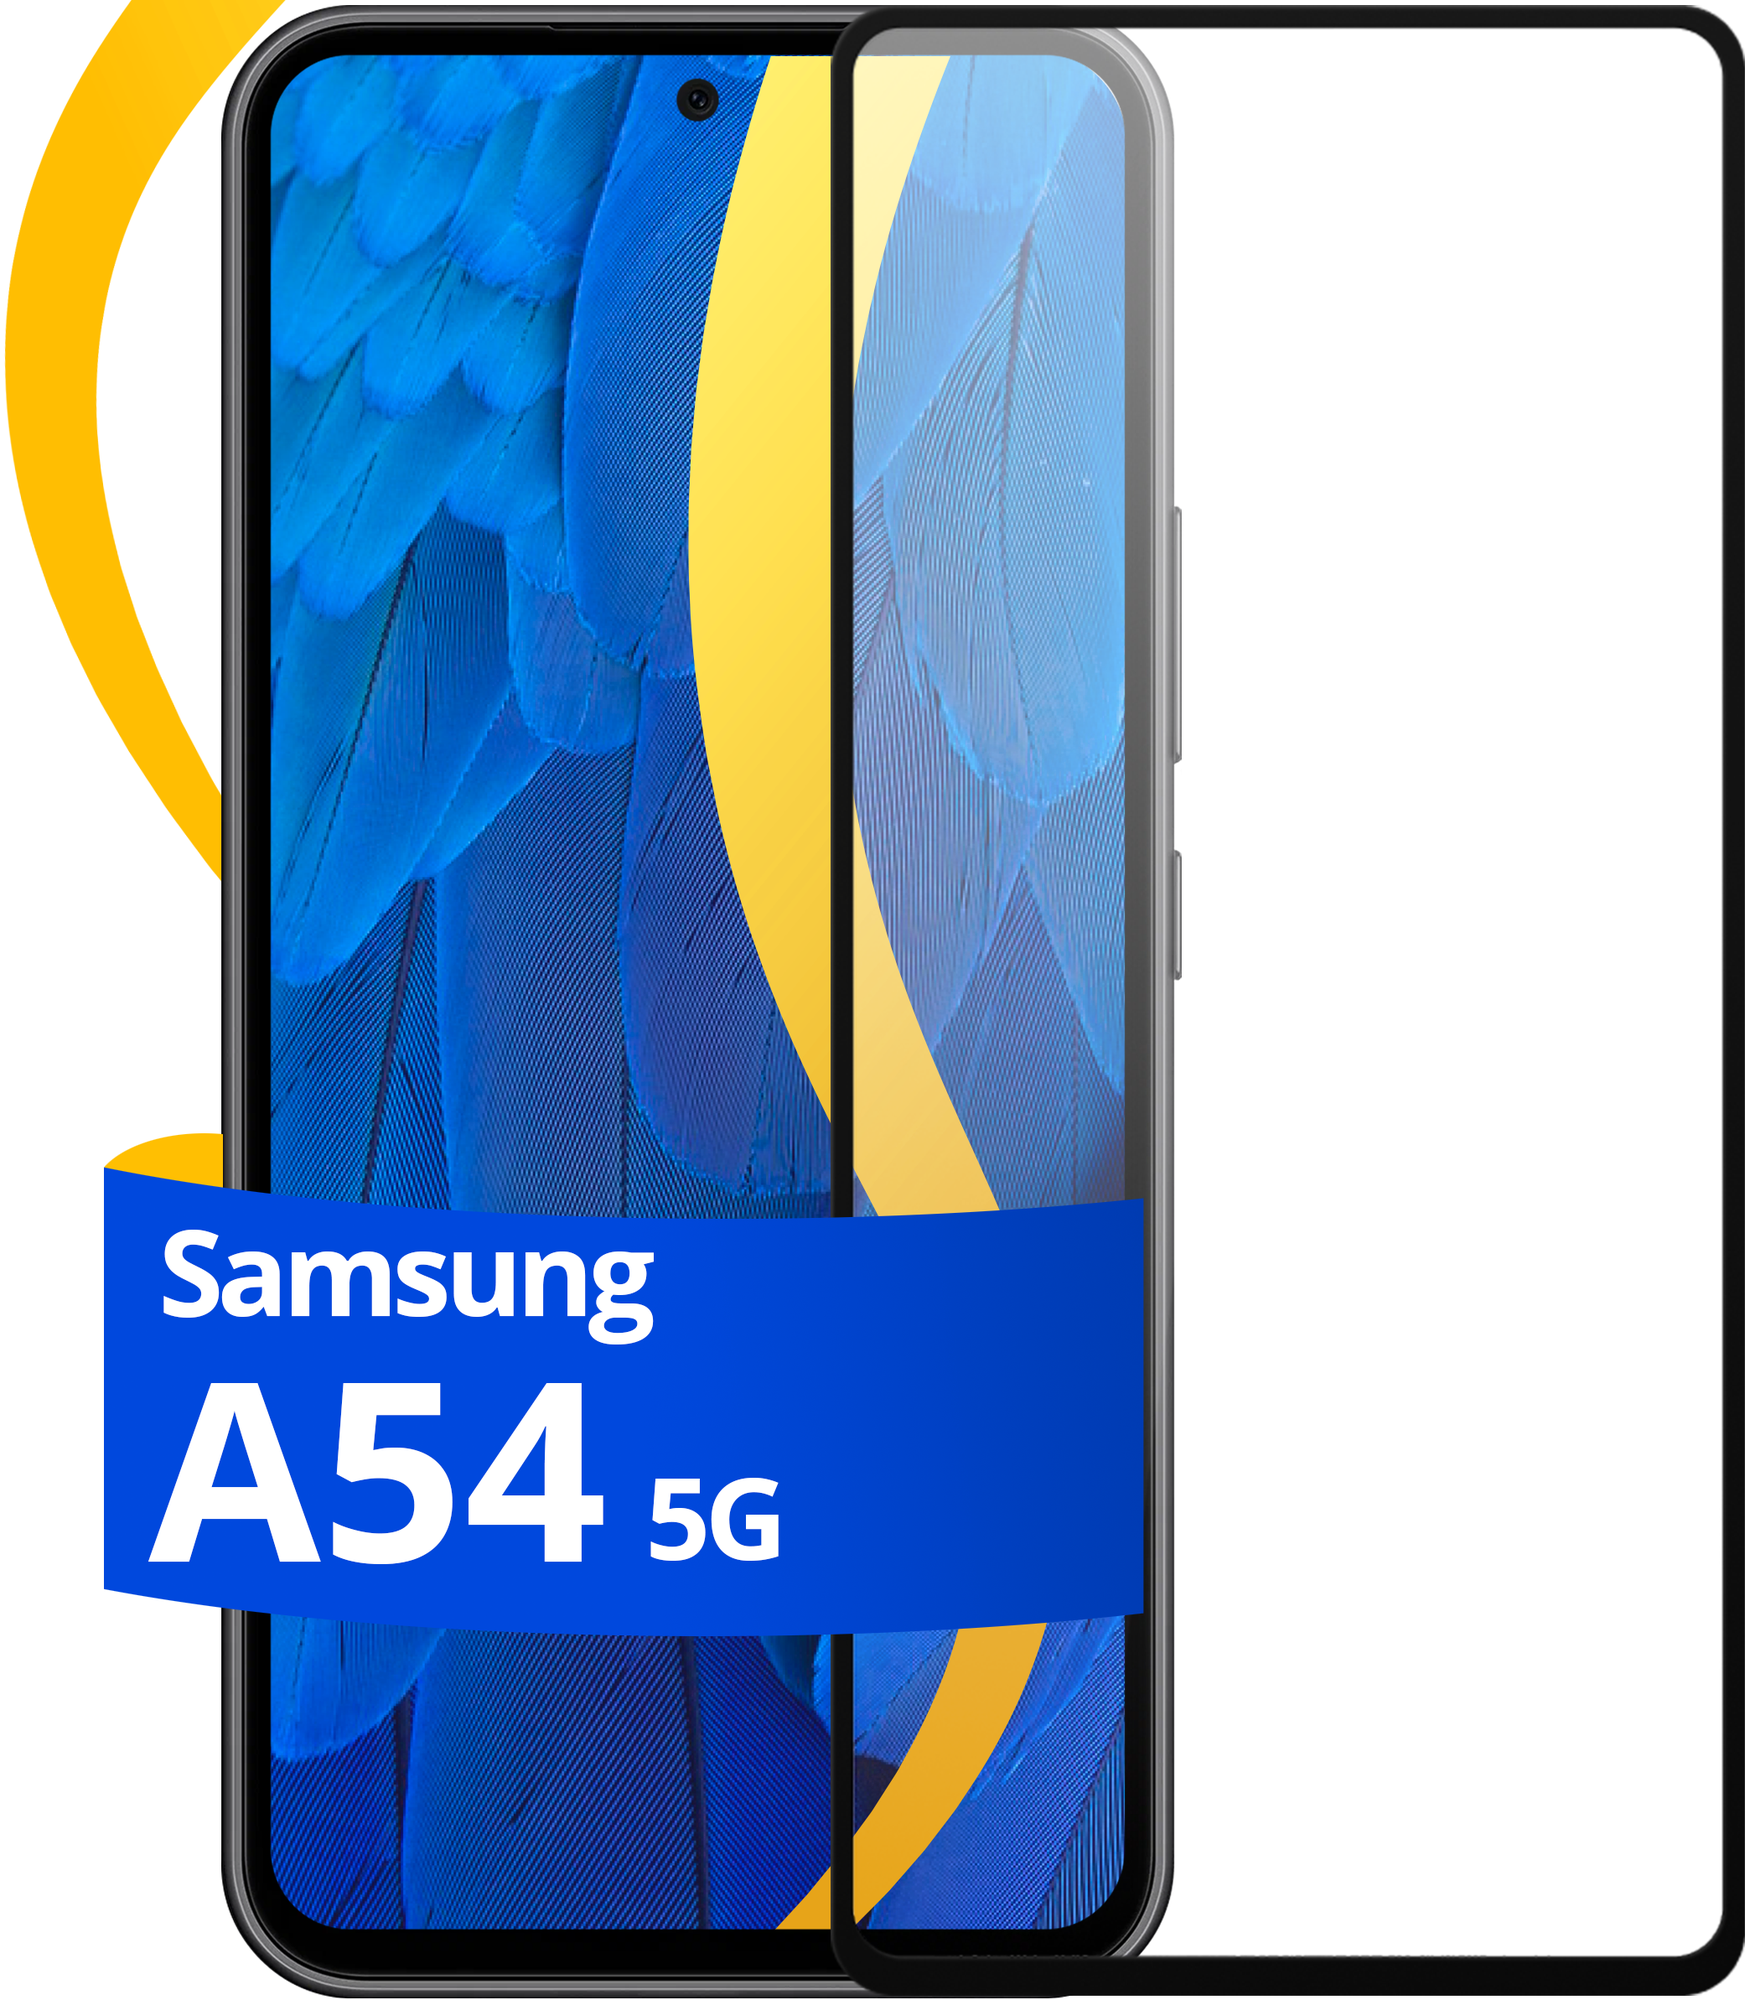 Глянцевое защитное стекло для телефона Samsung Galaxy A54 5G / Противоударное стекло с олеофобным покрытием на смартфон Самсунг Галакси А54 5Г